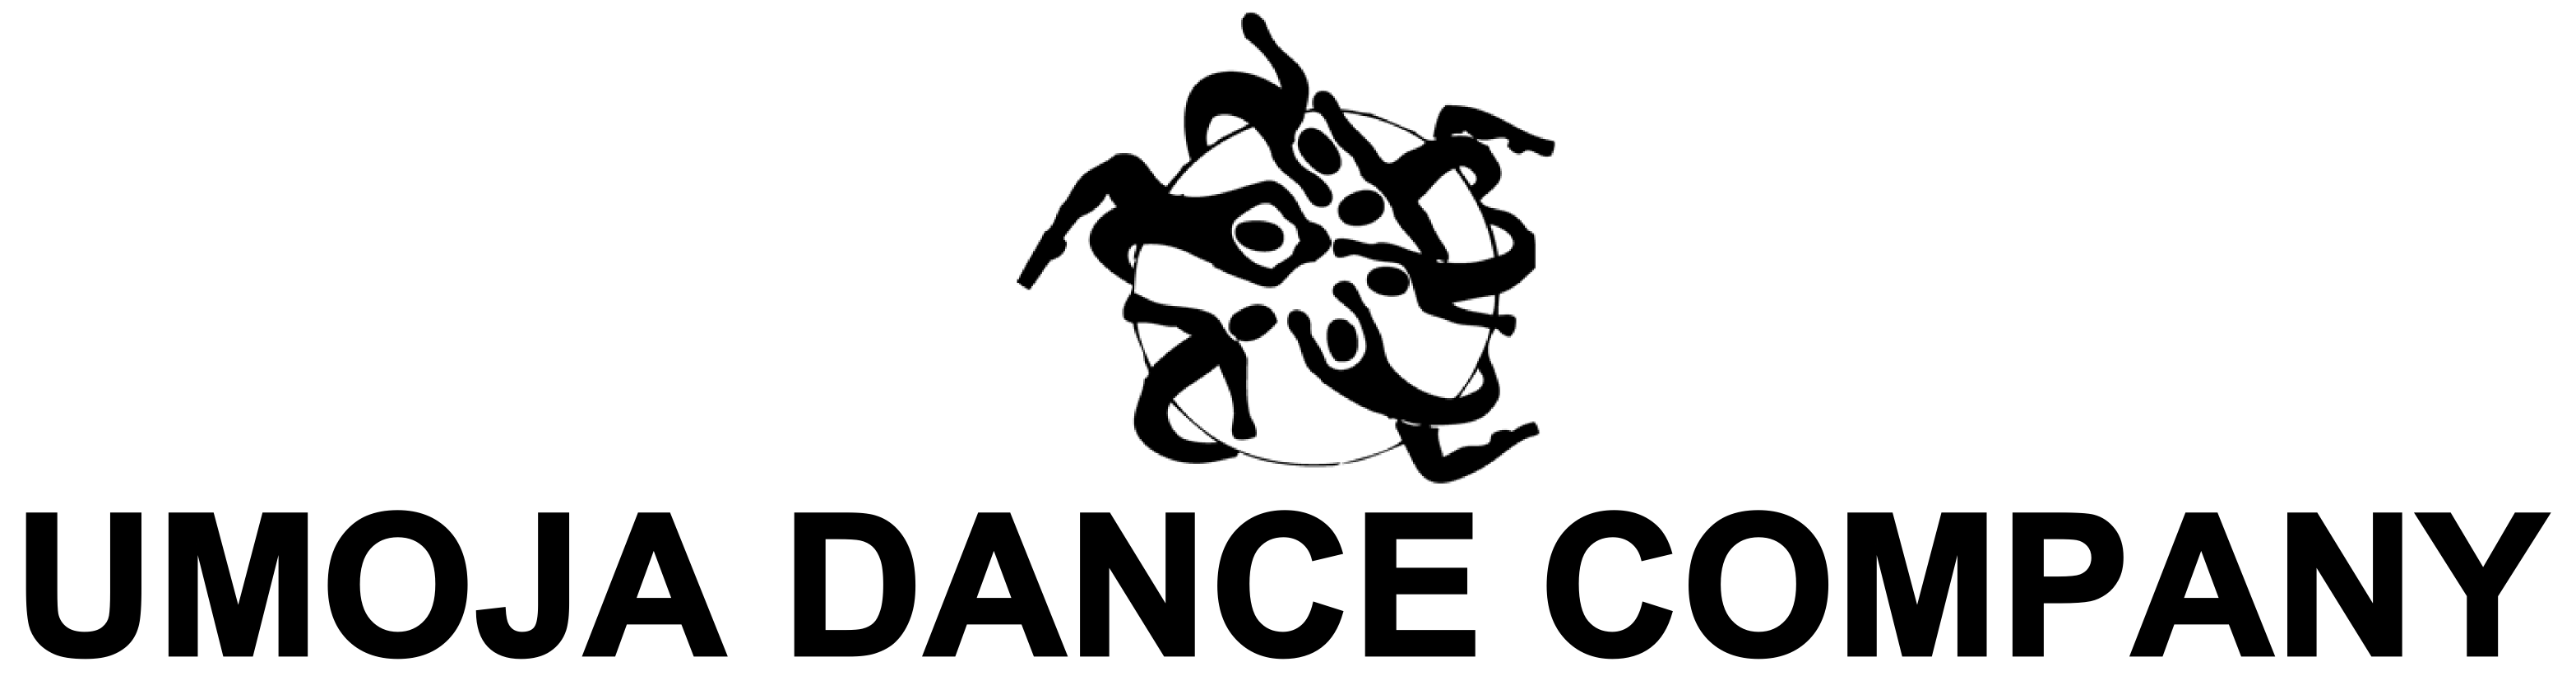 Umoja Dance Company